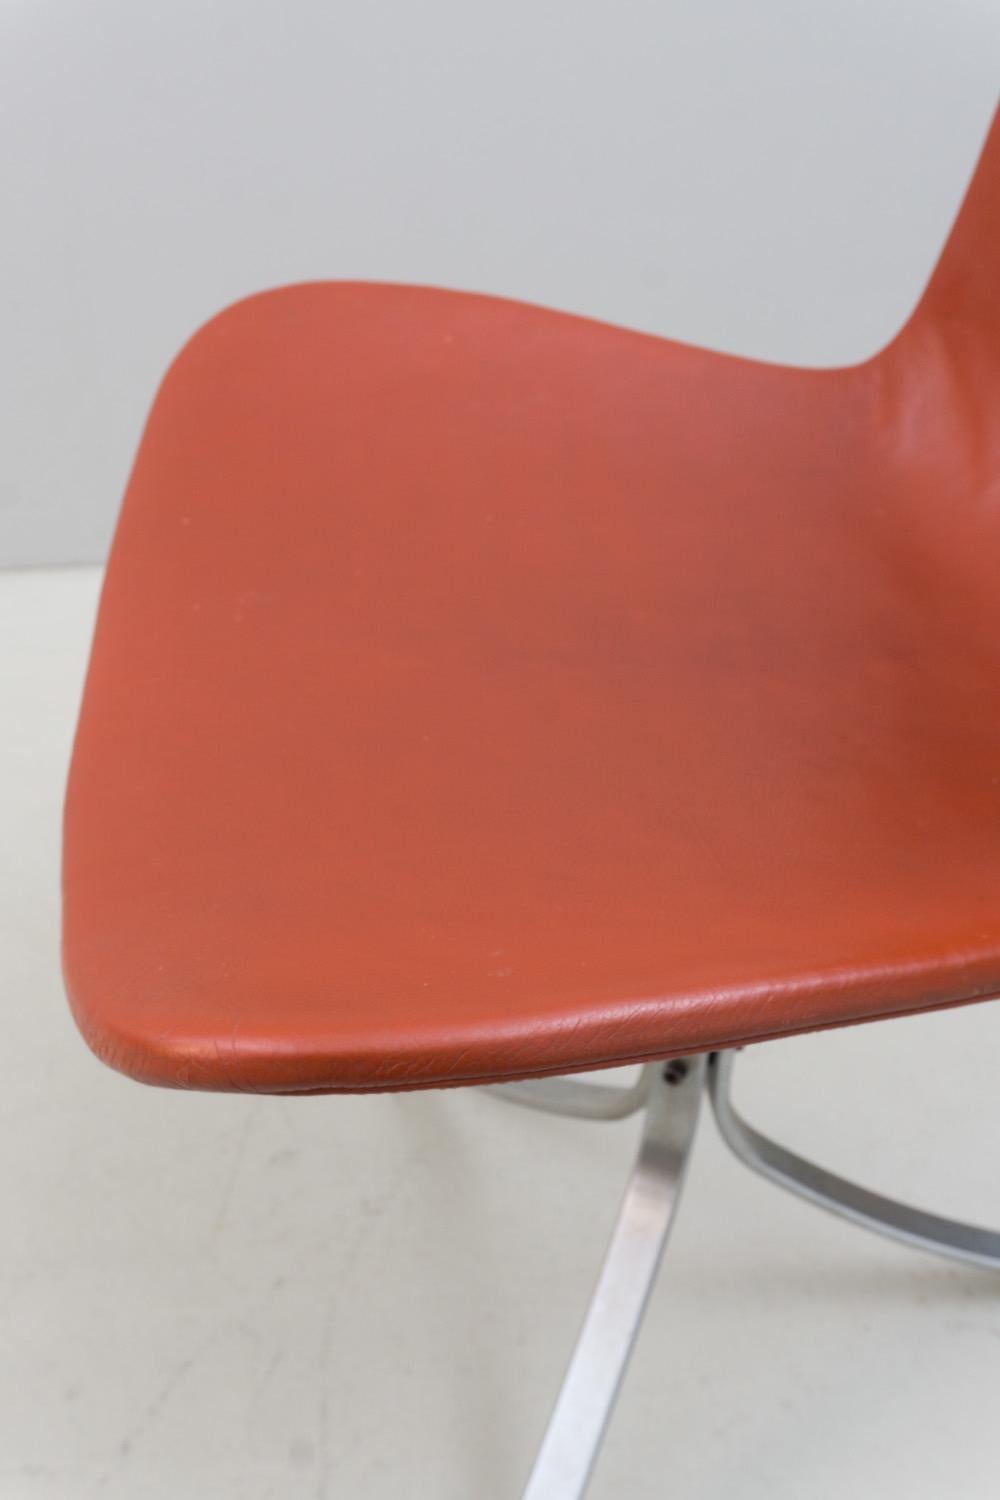 Chair 'PK 9' by Poul Kjaerholm, Fritz Hansen, Steel, Leather, 1960 For Sale 2